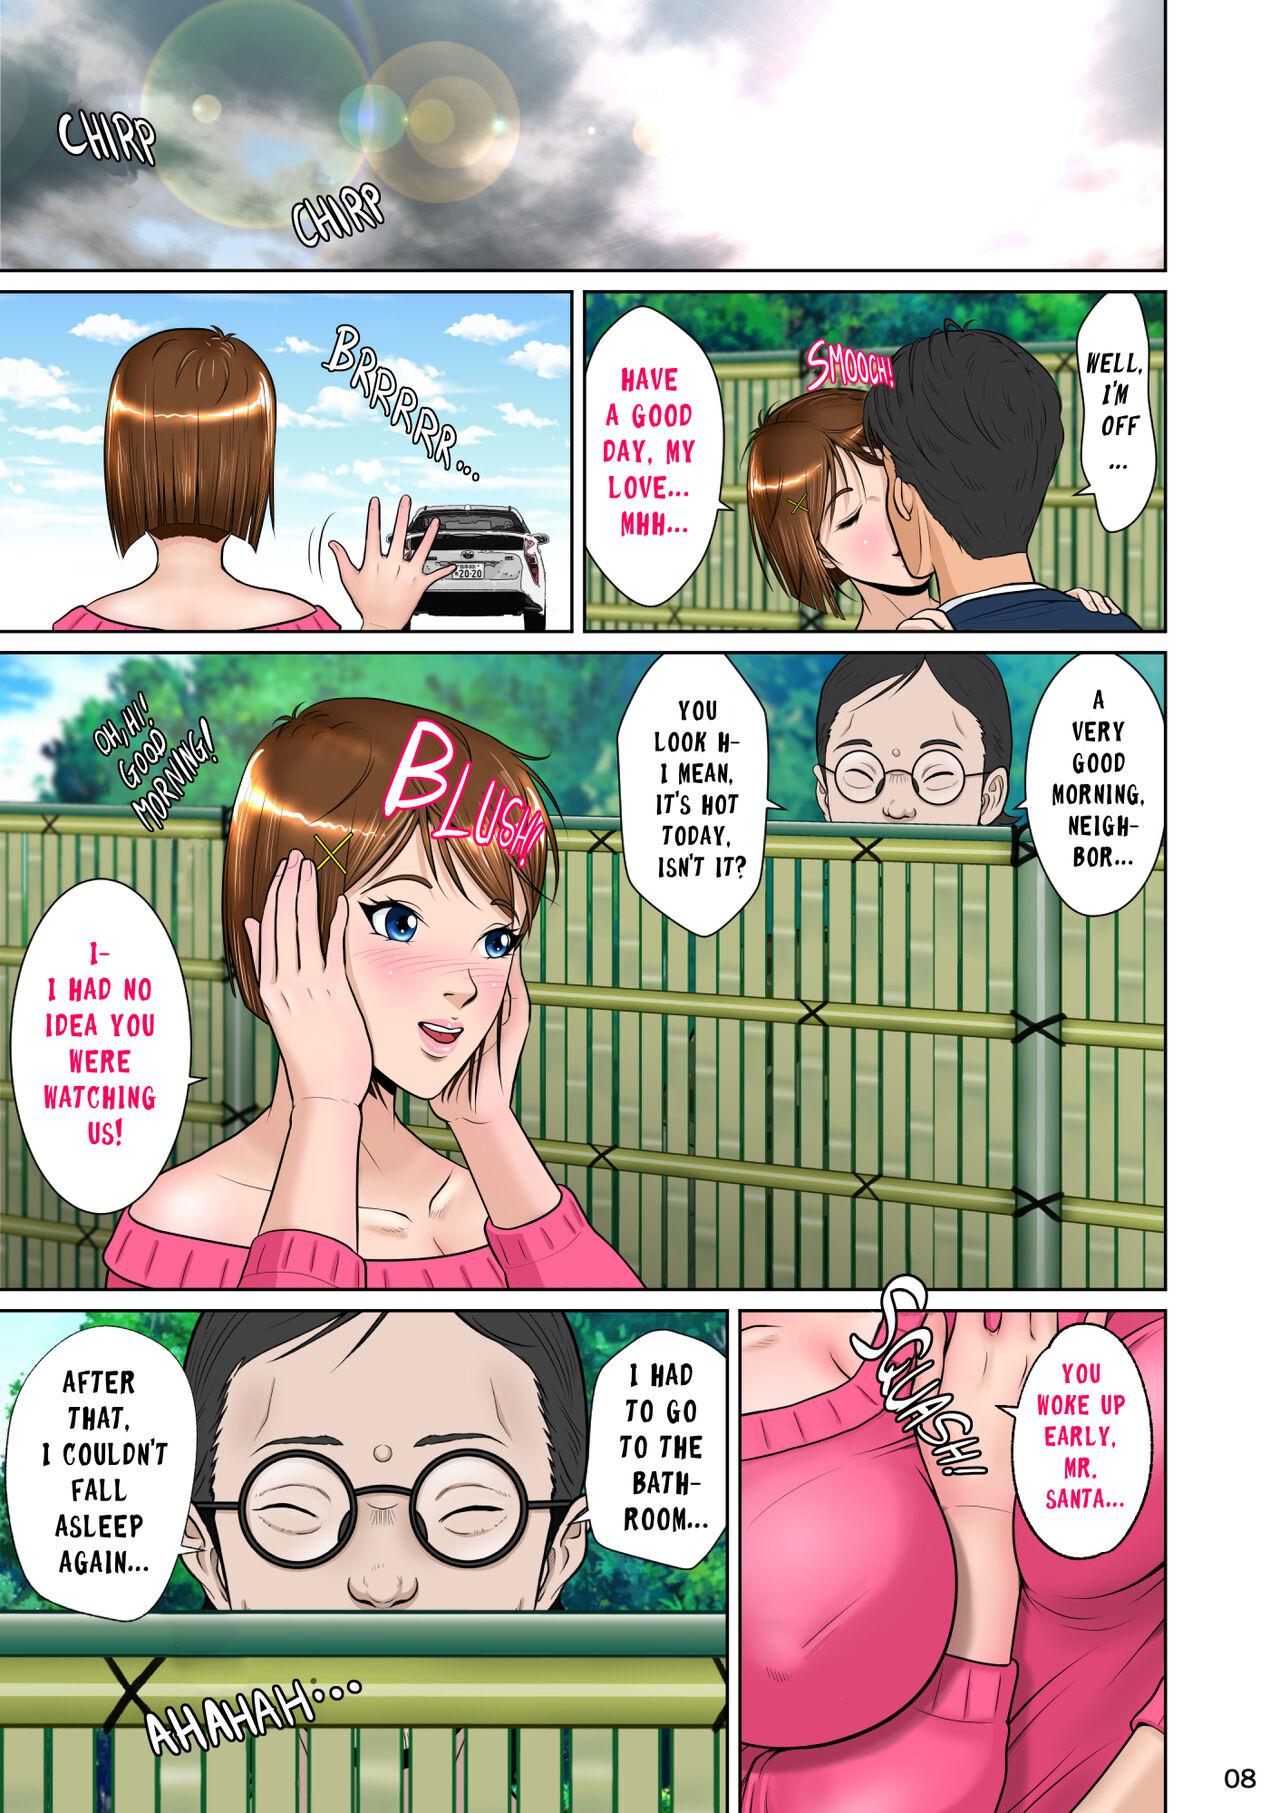 Kakine tsuma II daiichiwa | Wife on the Fence II - Chapter 1 18